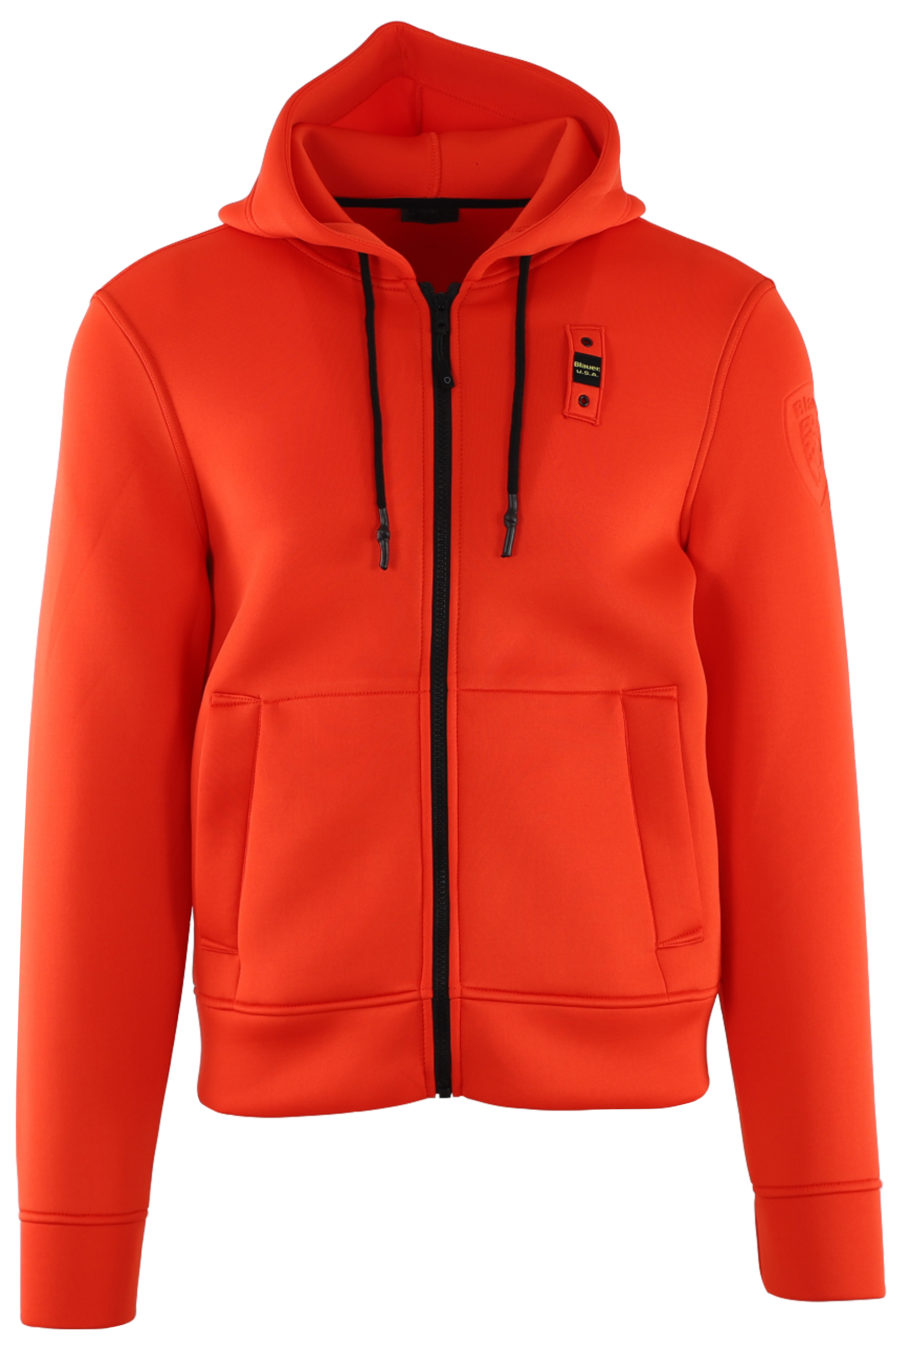 Orange neoprene sweatshirt with hood and zip - IMG 0509